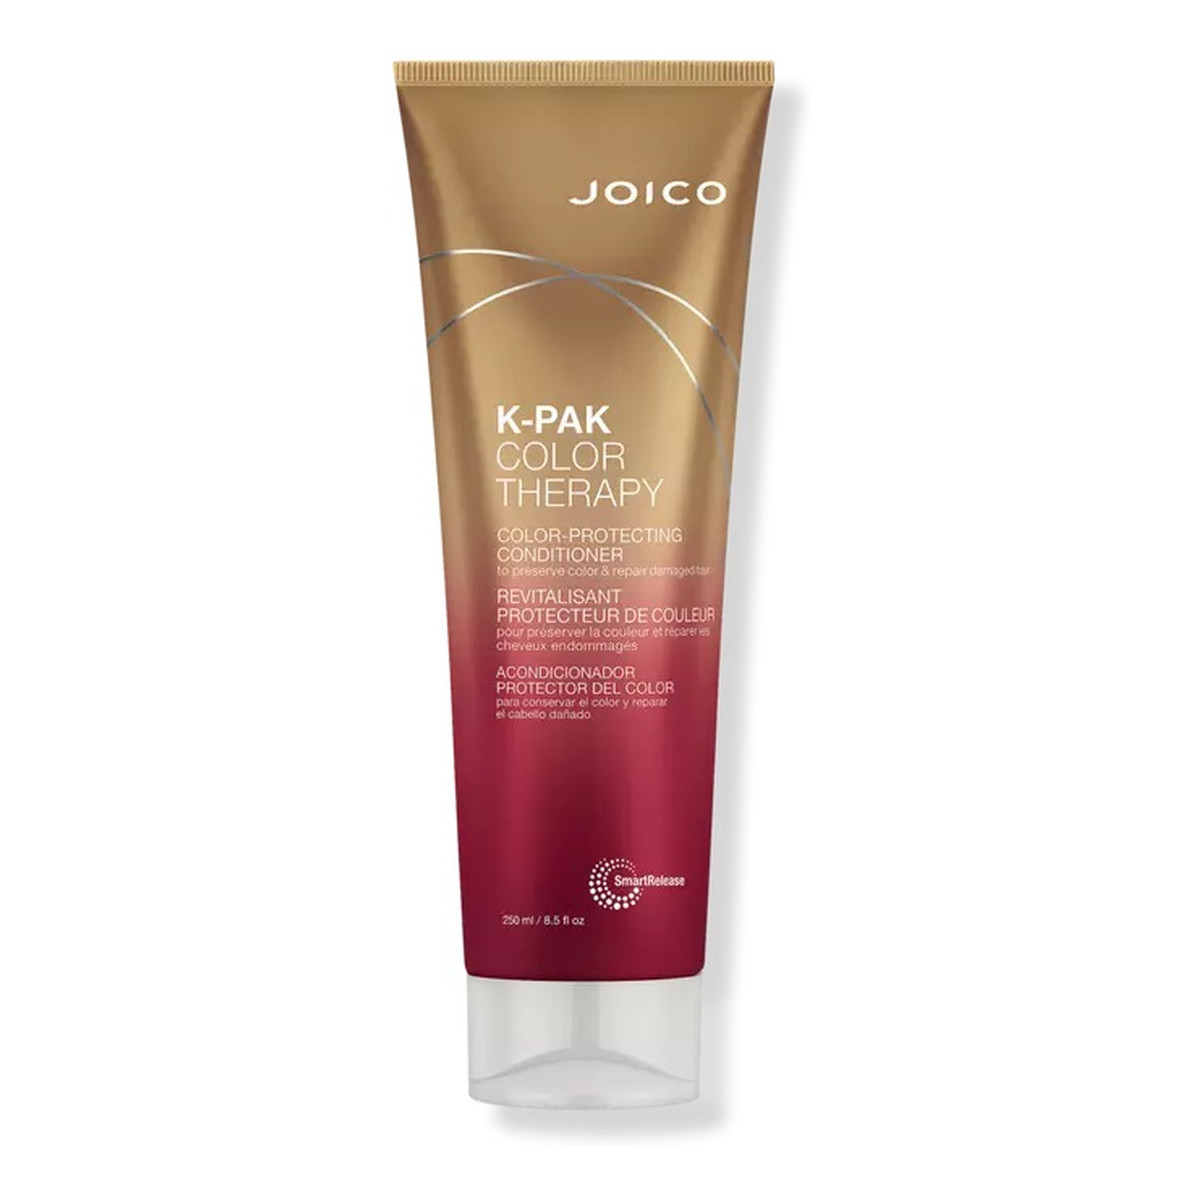 Joico K-pak color therapy conditioner odżywka chroniąca kolor włosów 250ml